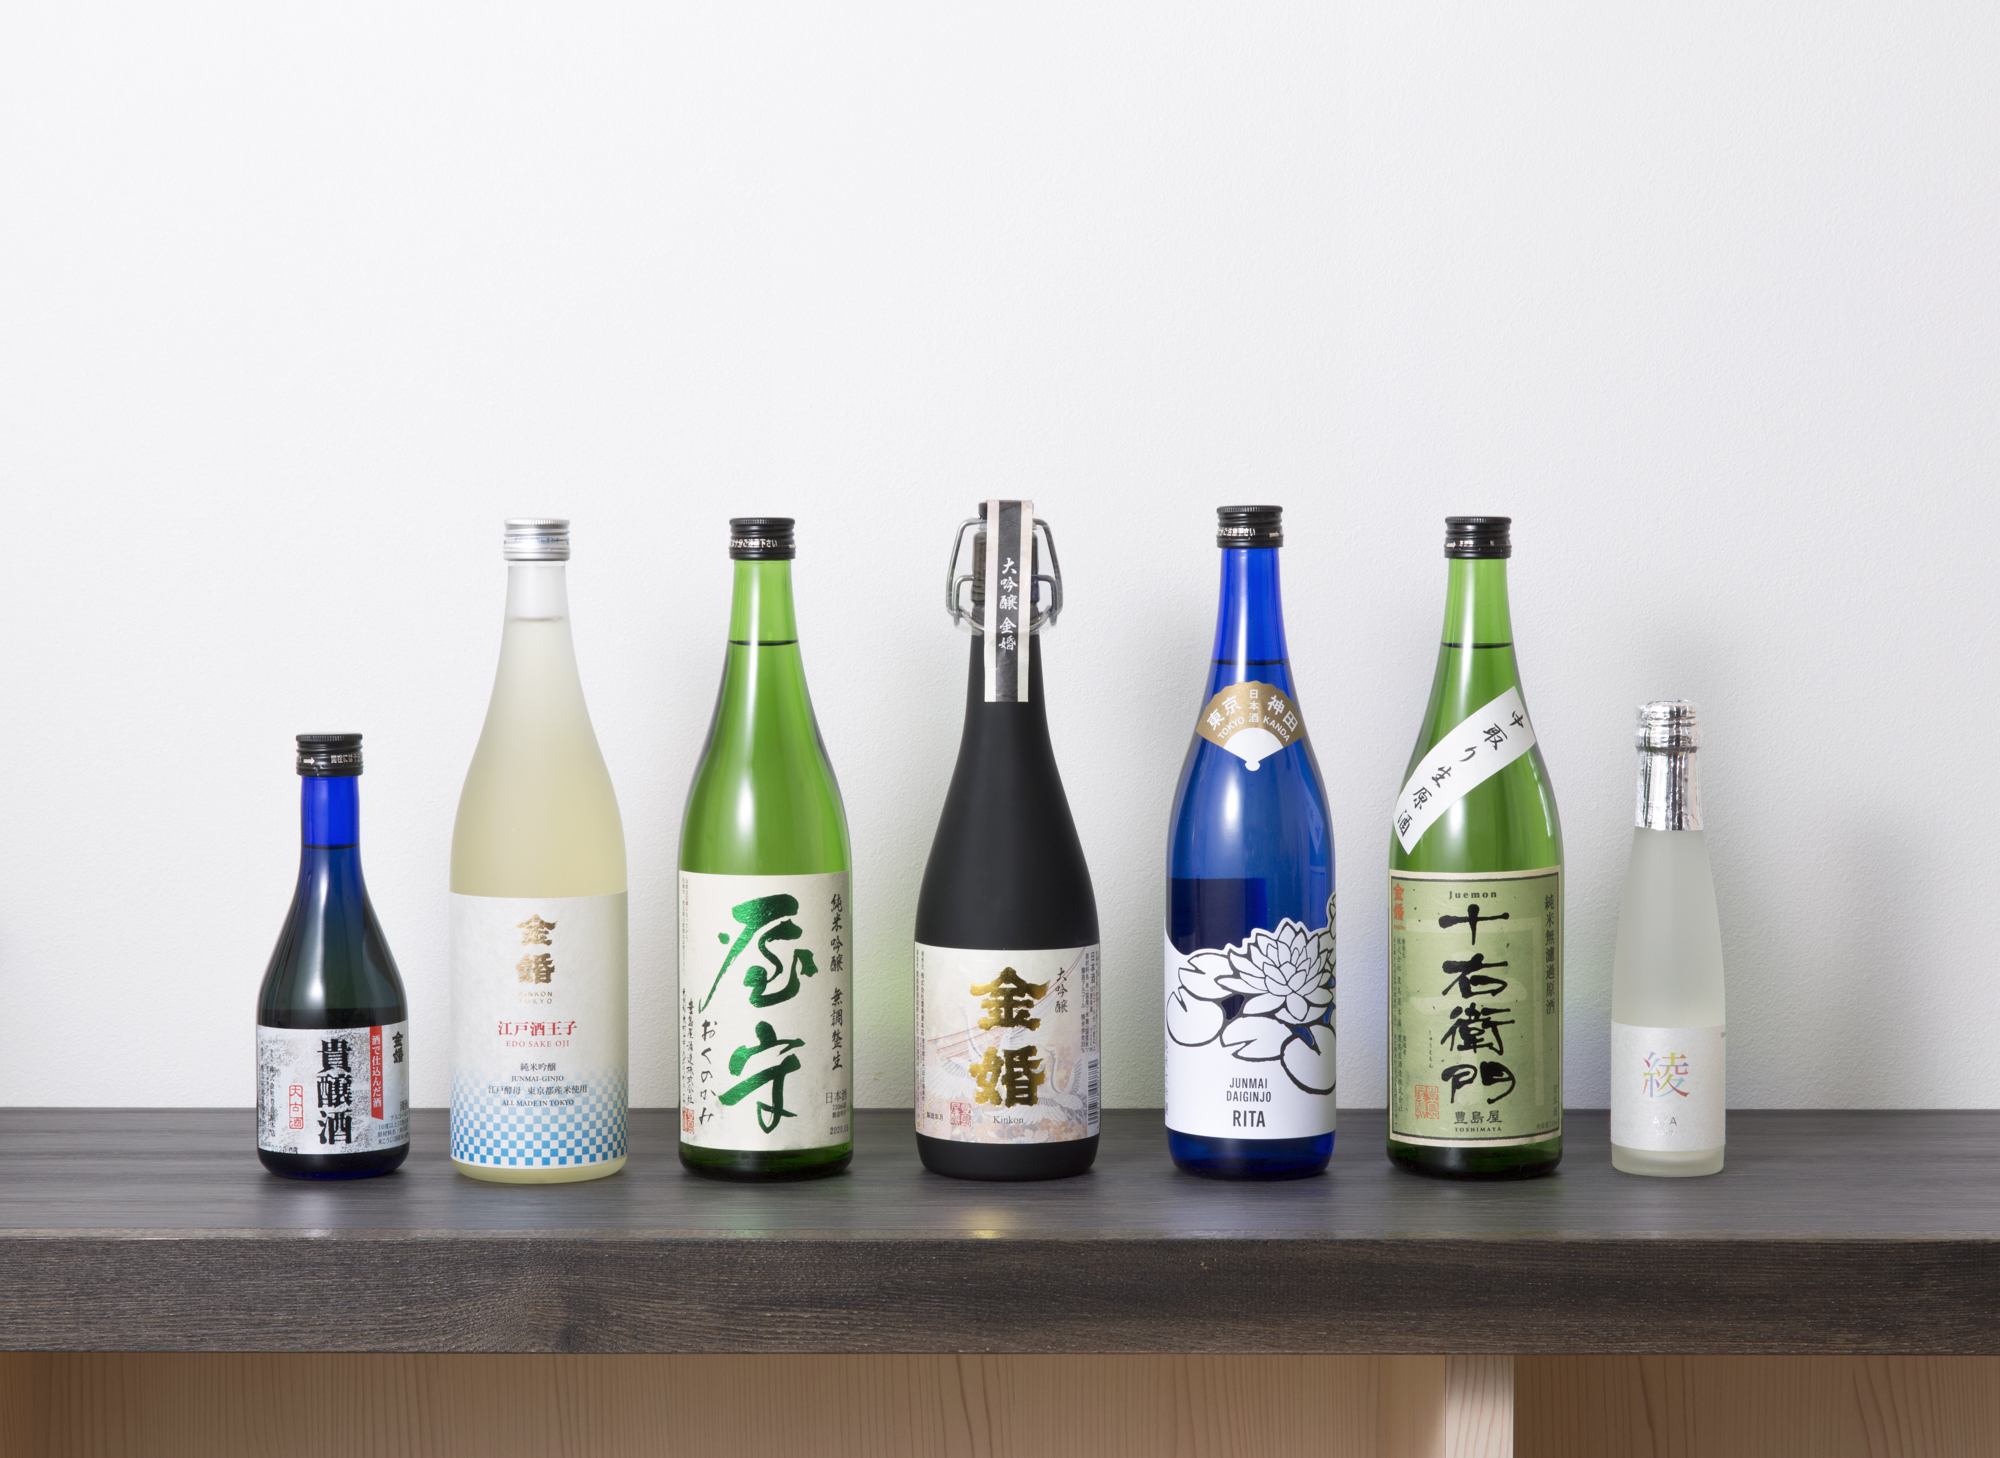 [Toshimaya Honten] Le « Kinkon – Junmai Muroka-genshu Juemon, Jikagumi », un saké réservé à l’été et plaisir propre à cette saison, maintenant en vente Les délicieuses saveurs d’Edo Tokyo dont profiter en ce début d’été